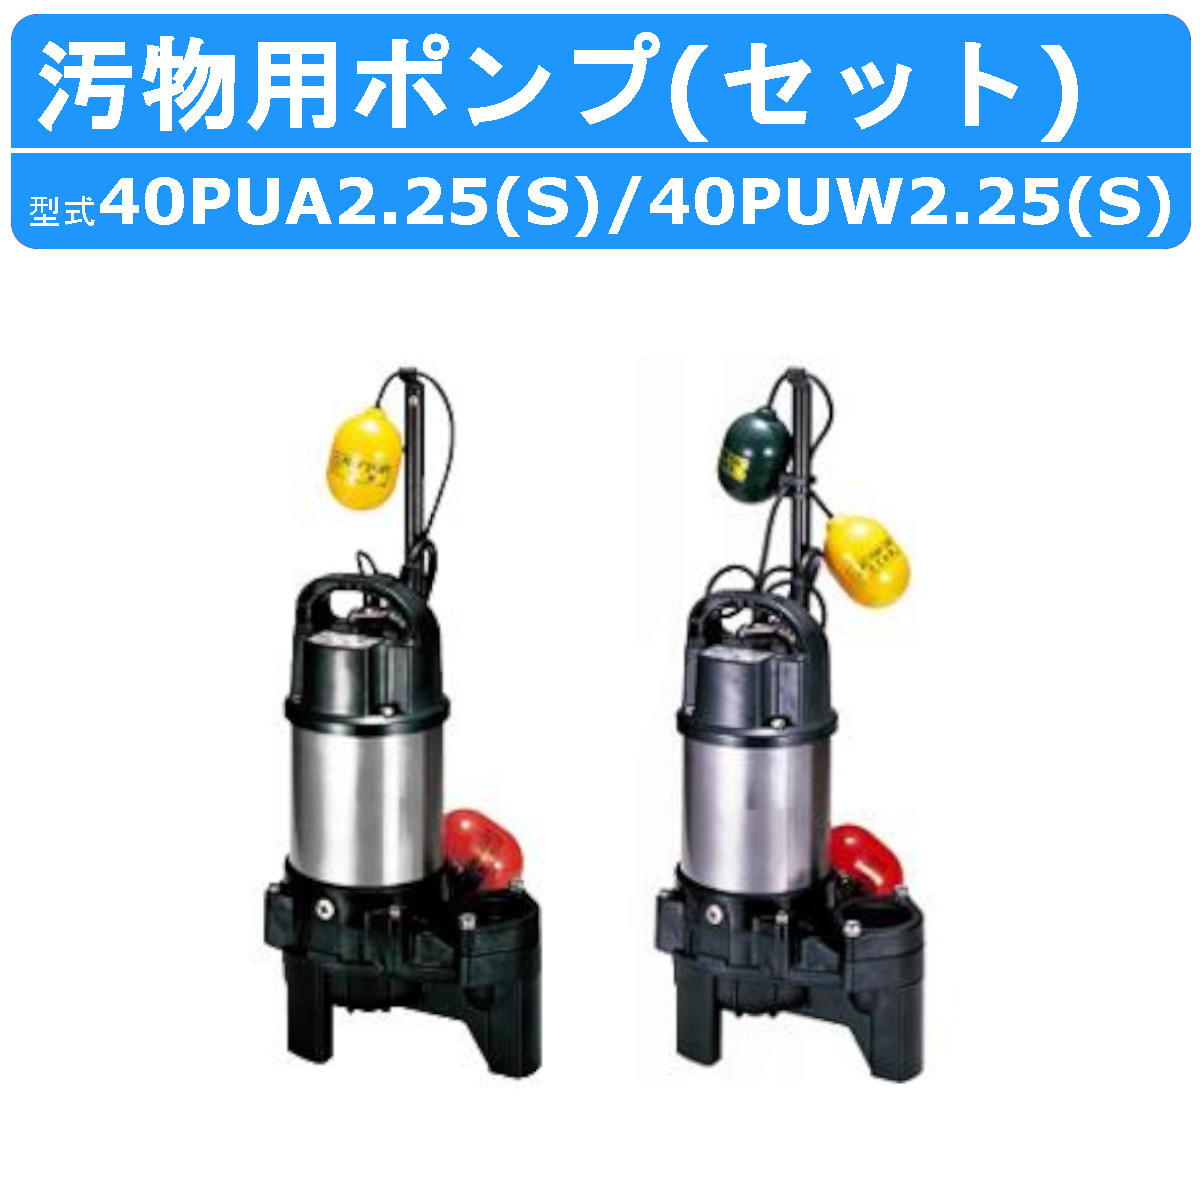 ツルミ 汚物用 水中ポンプ セット 40PUA2.25S / 40PUW2.25S 100V